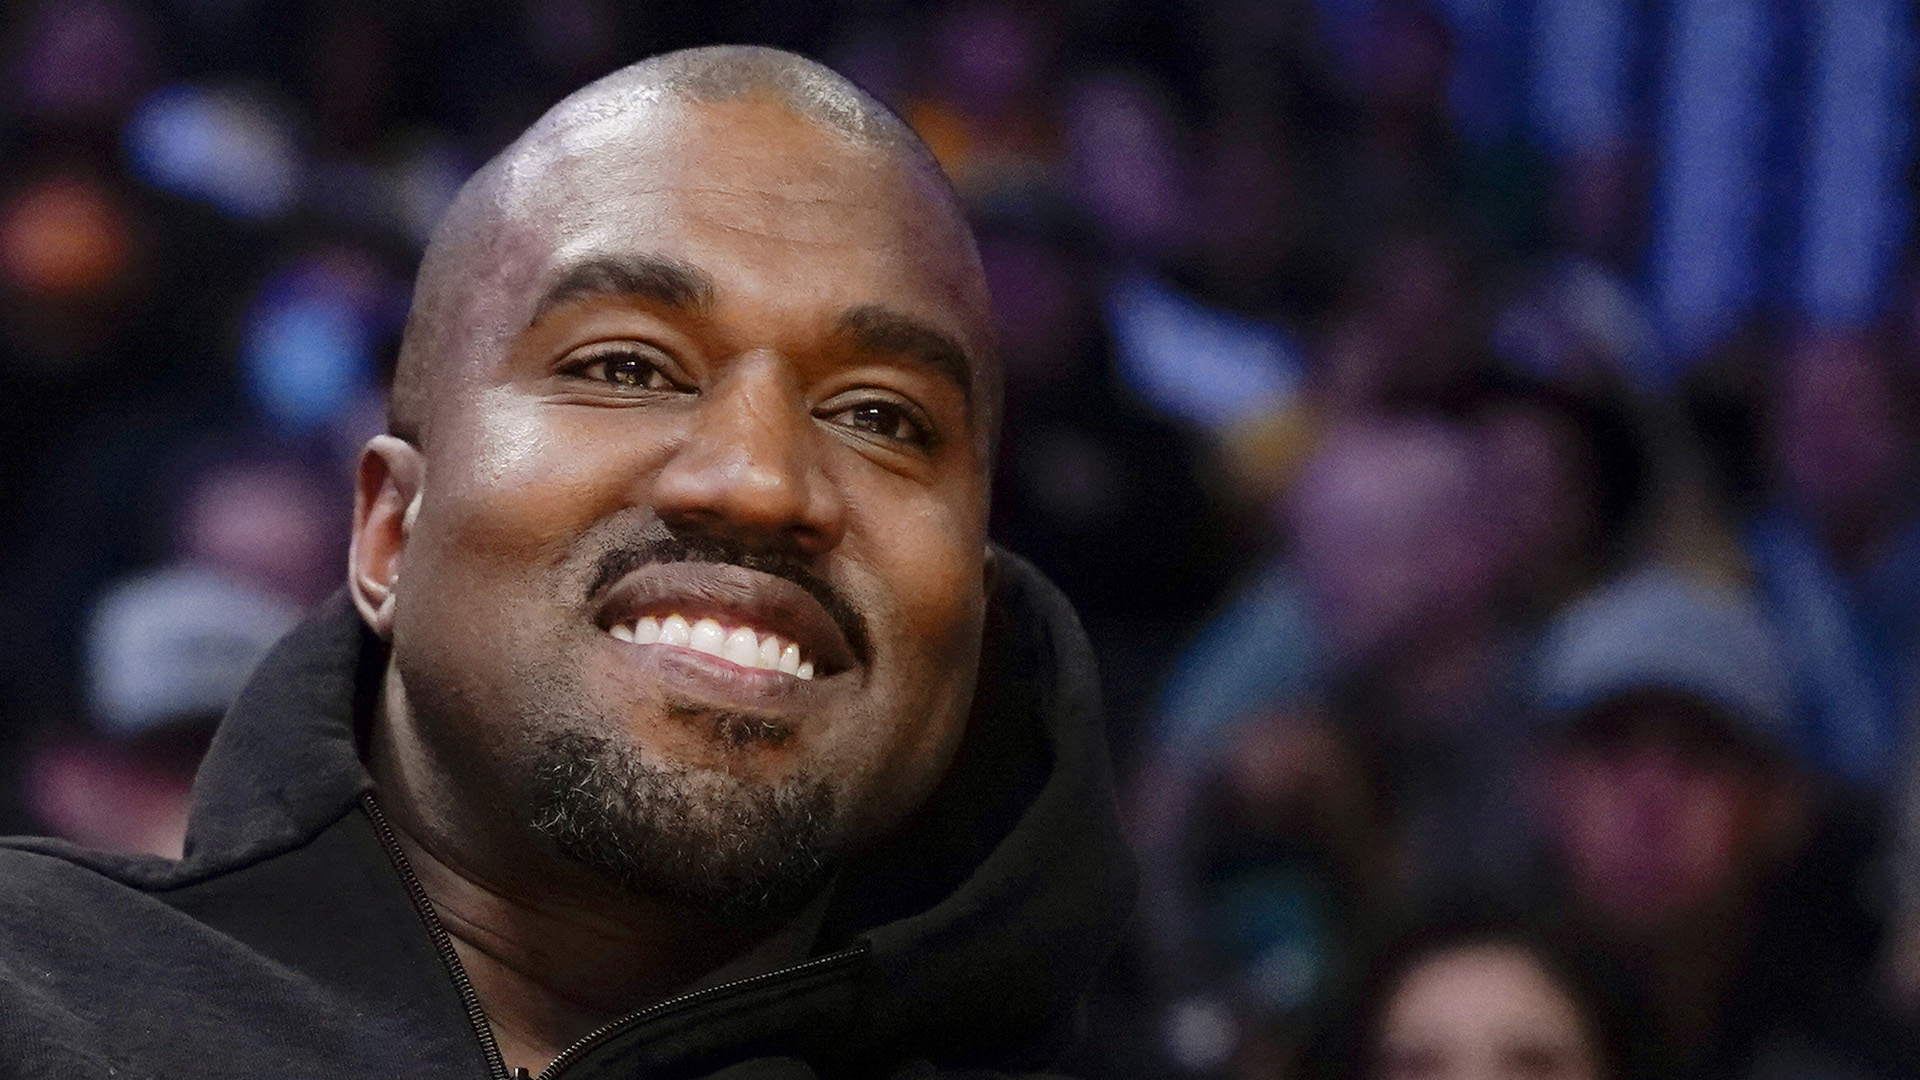 Après avoir été largué par plusieurs partenaires tels que Gap, Adidas et Balenciaga pour avoir tenu des propos antisémites, Kanye West a annoncé la semaine dernière vouloir se présenter à nouveau à la présidence des États-Unis.